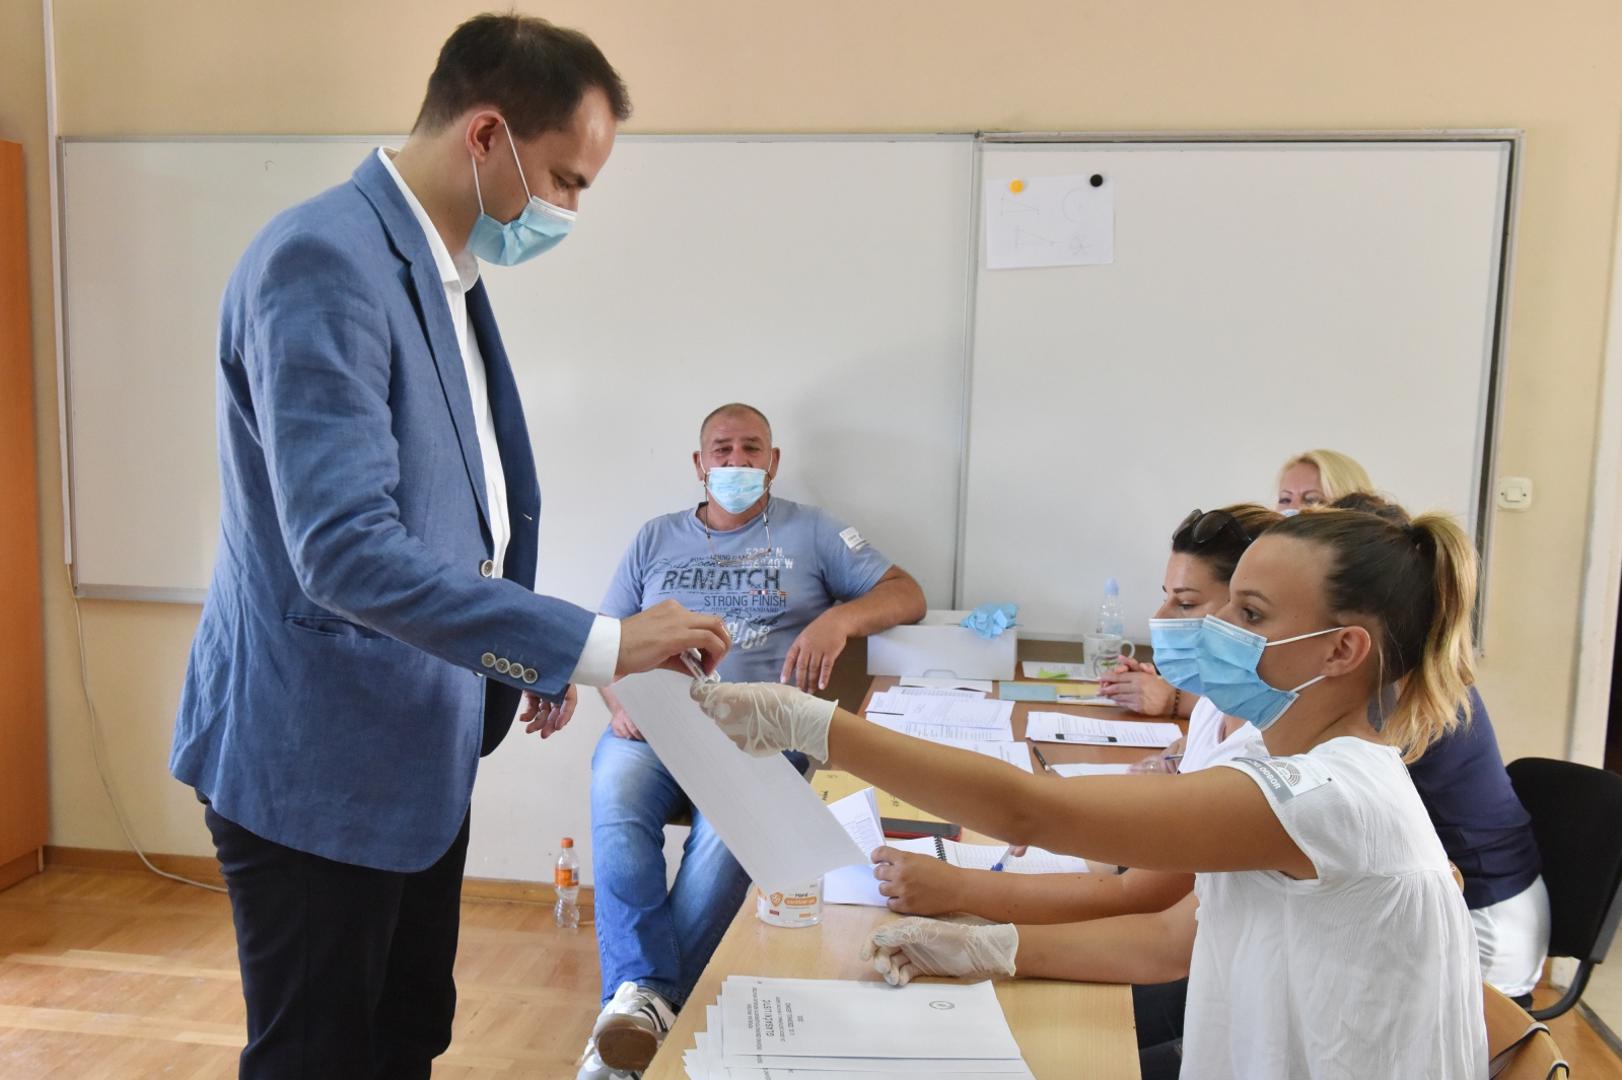 05.07.2020. Sibenik - Ministar Uprave Ivan Malenica glasovao na birackom mjestu u Brodarici. Photo: Hrvoje Jelavic/PIXSELL